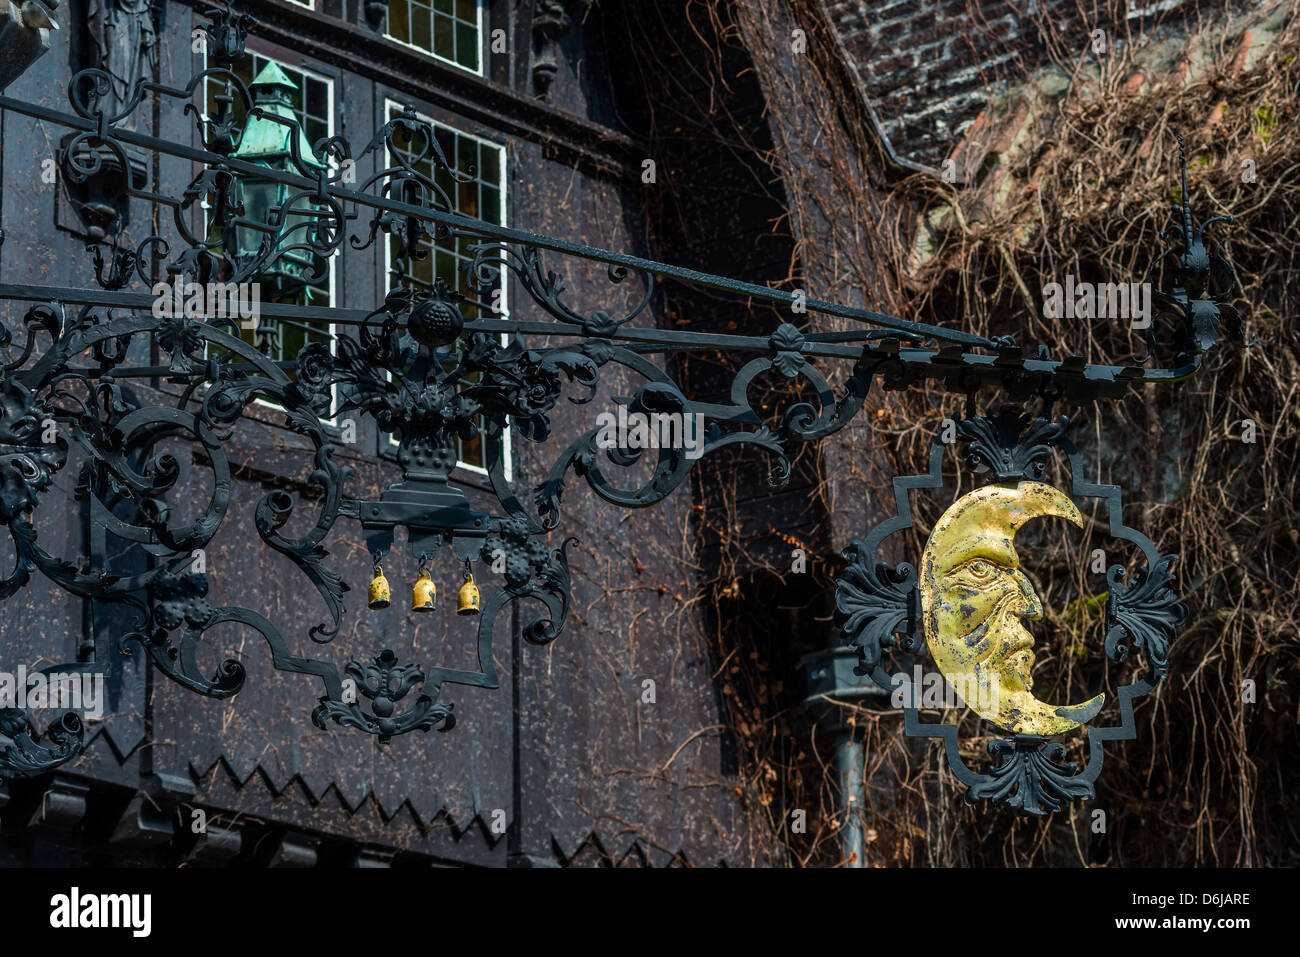 Artistic forging element in Bruges, Belgium Stock Photo